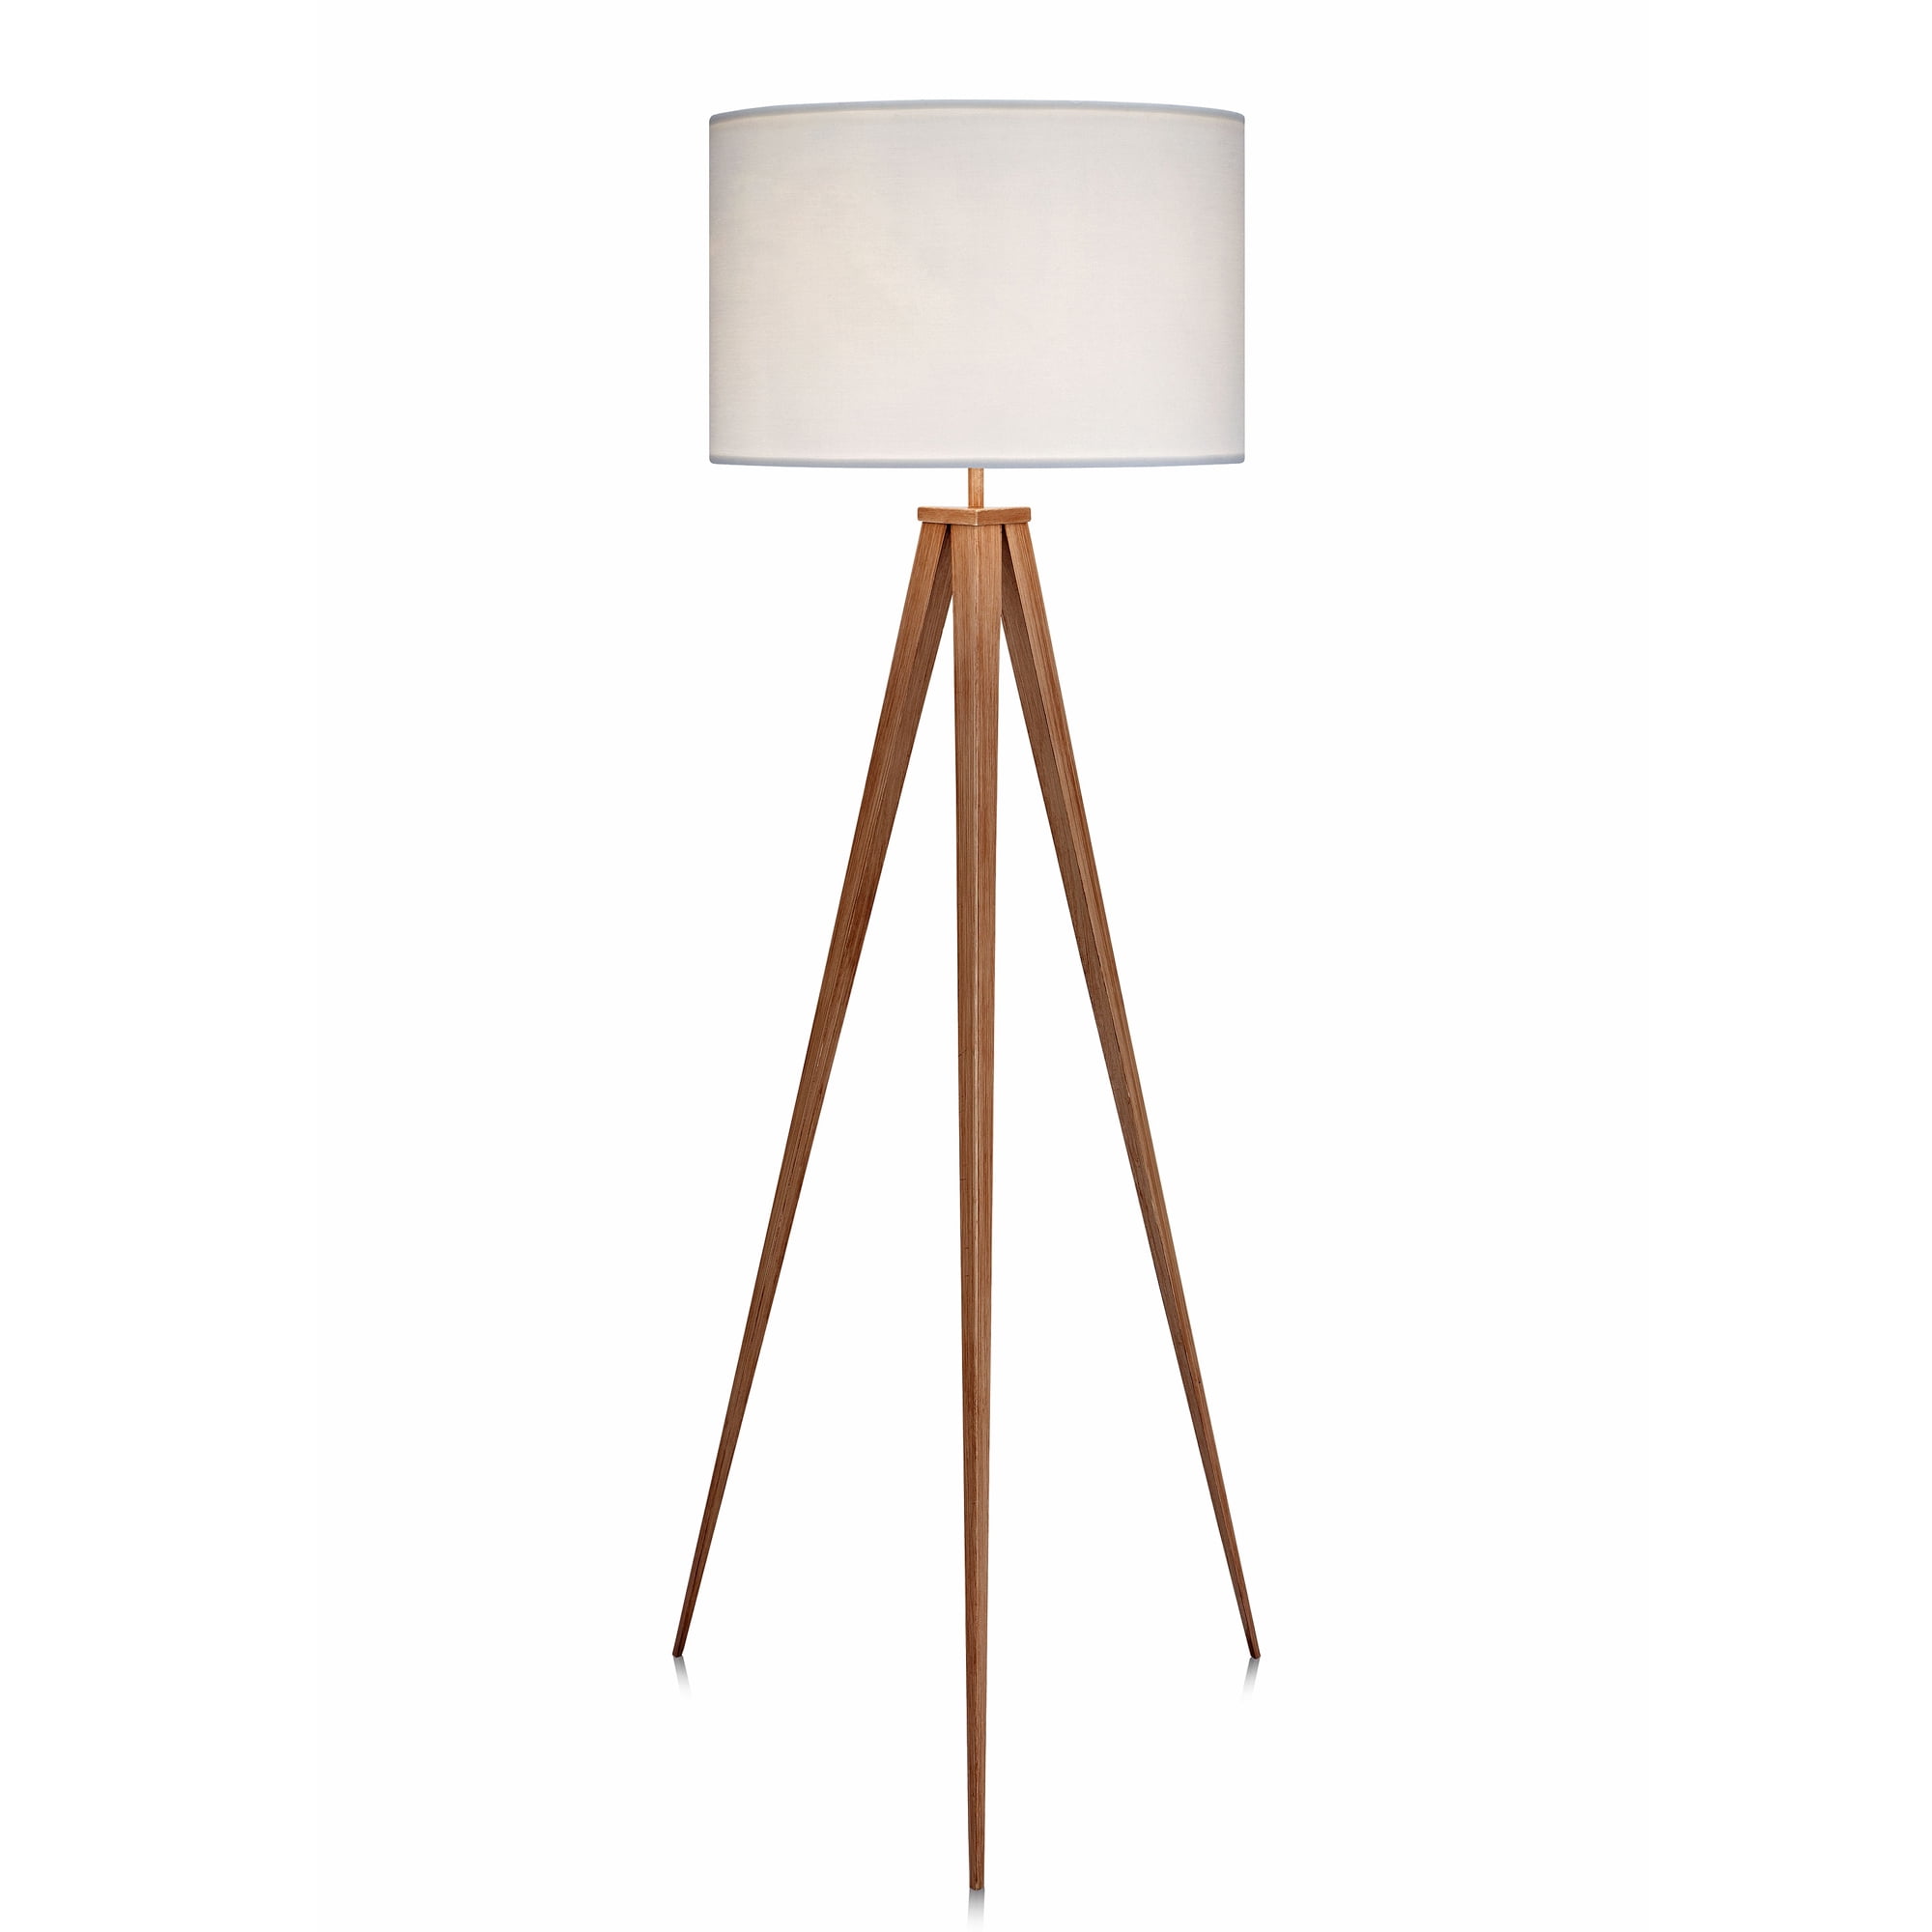 Versanora Romanza Tripod Floor Lamp With White Shade 60 23 H